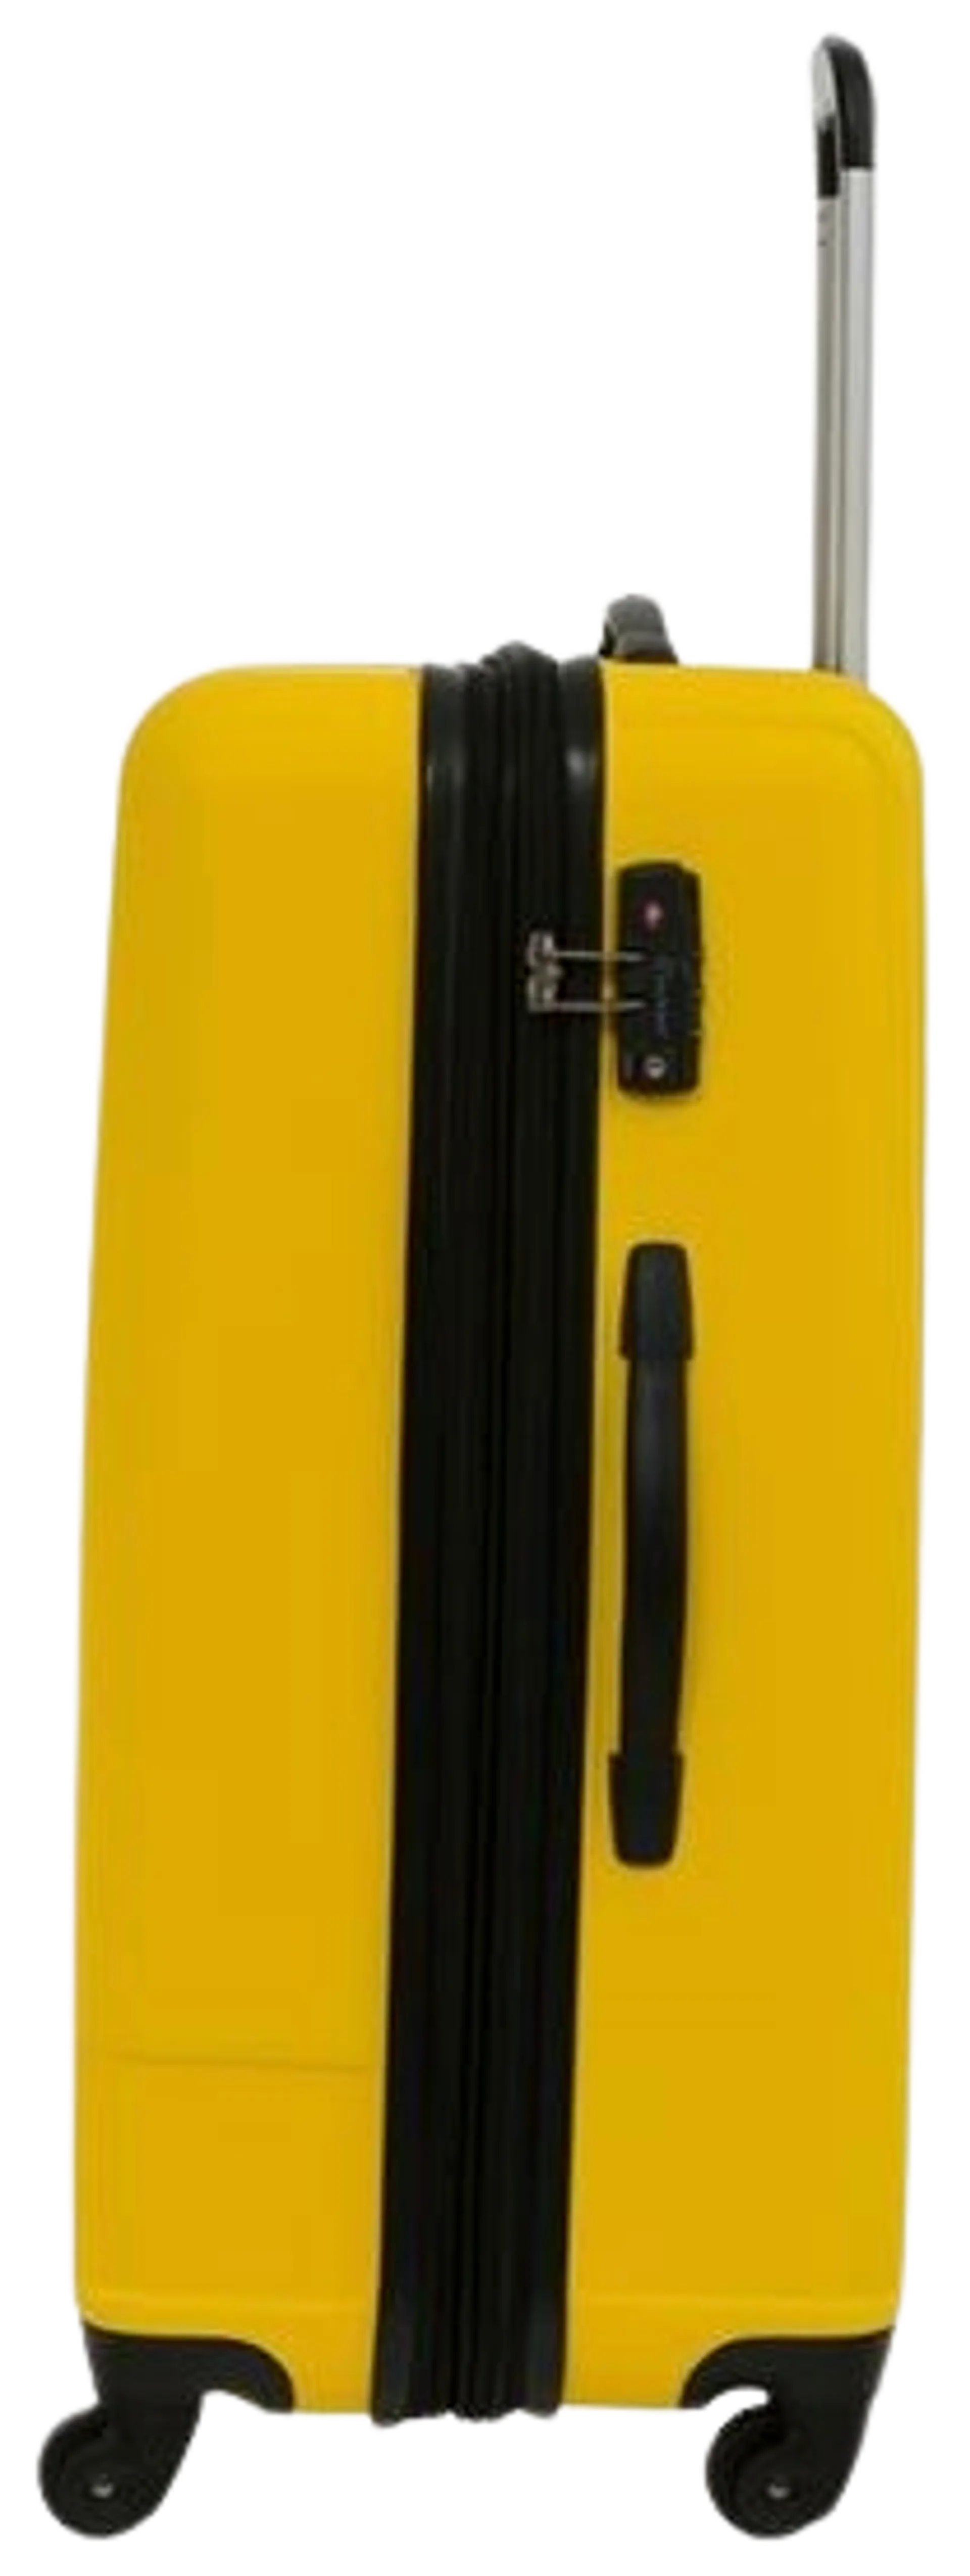 Cavalet Malibu matkalaukku L 73 cm, keltainen - 4